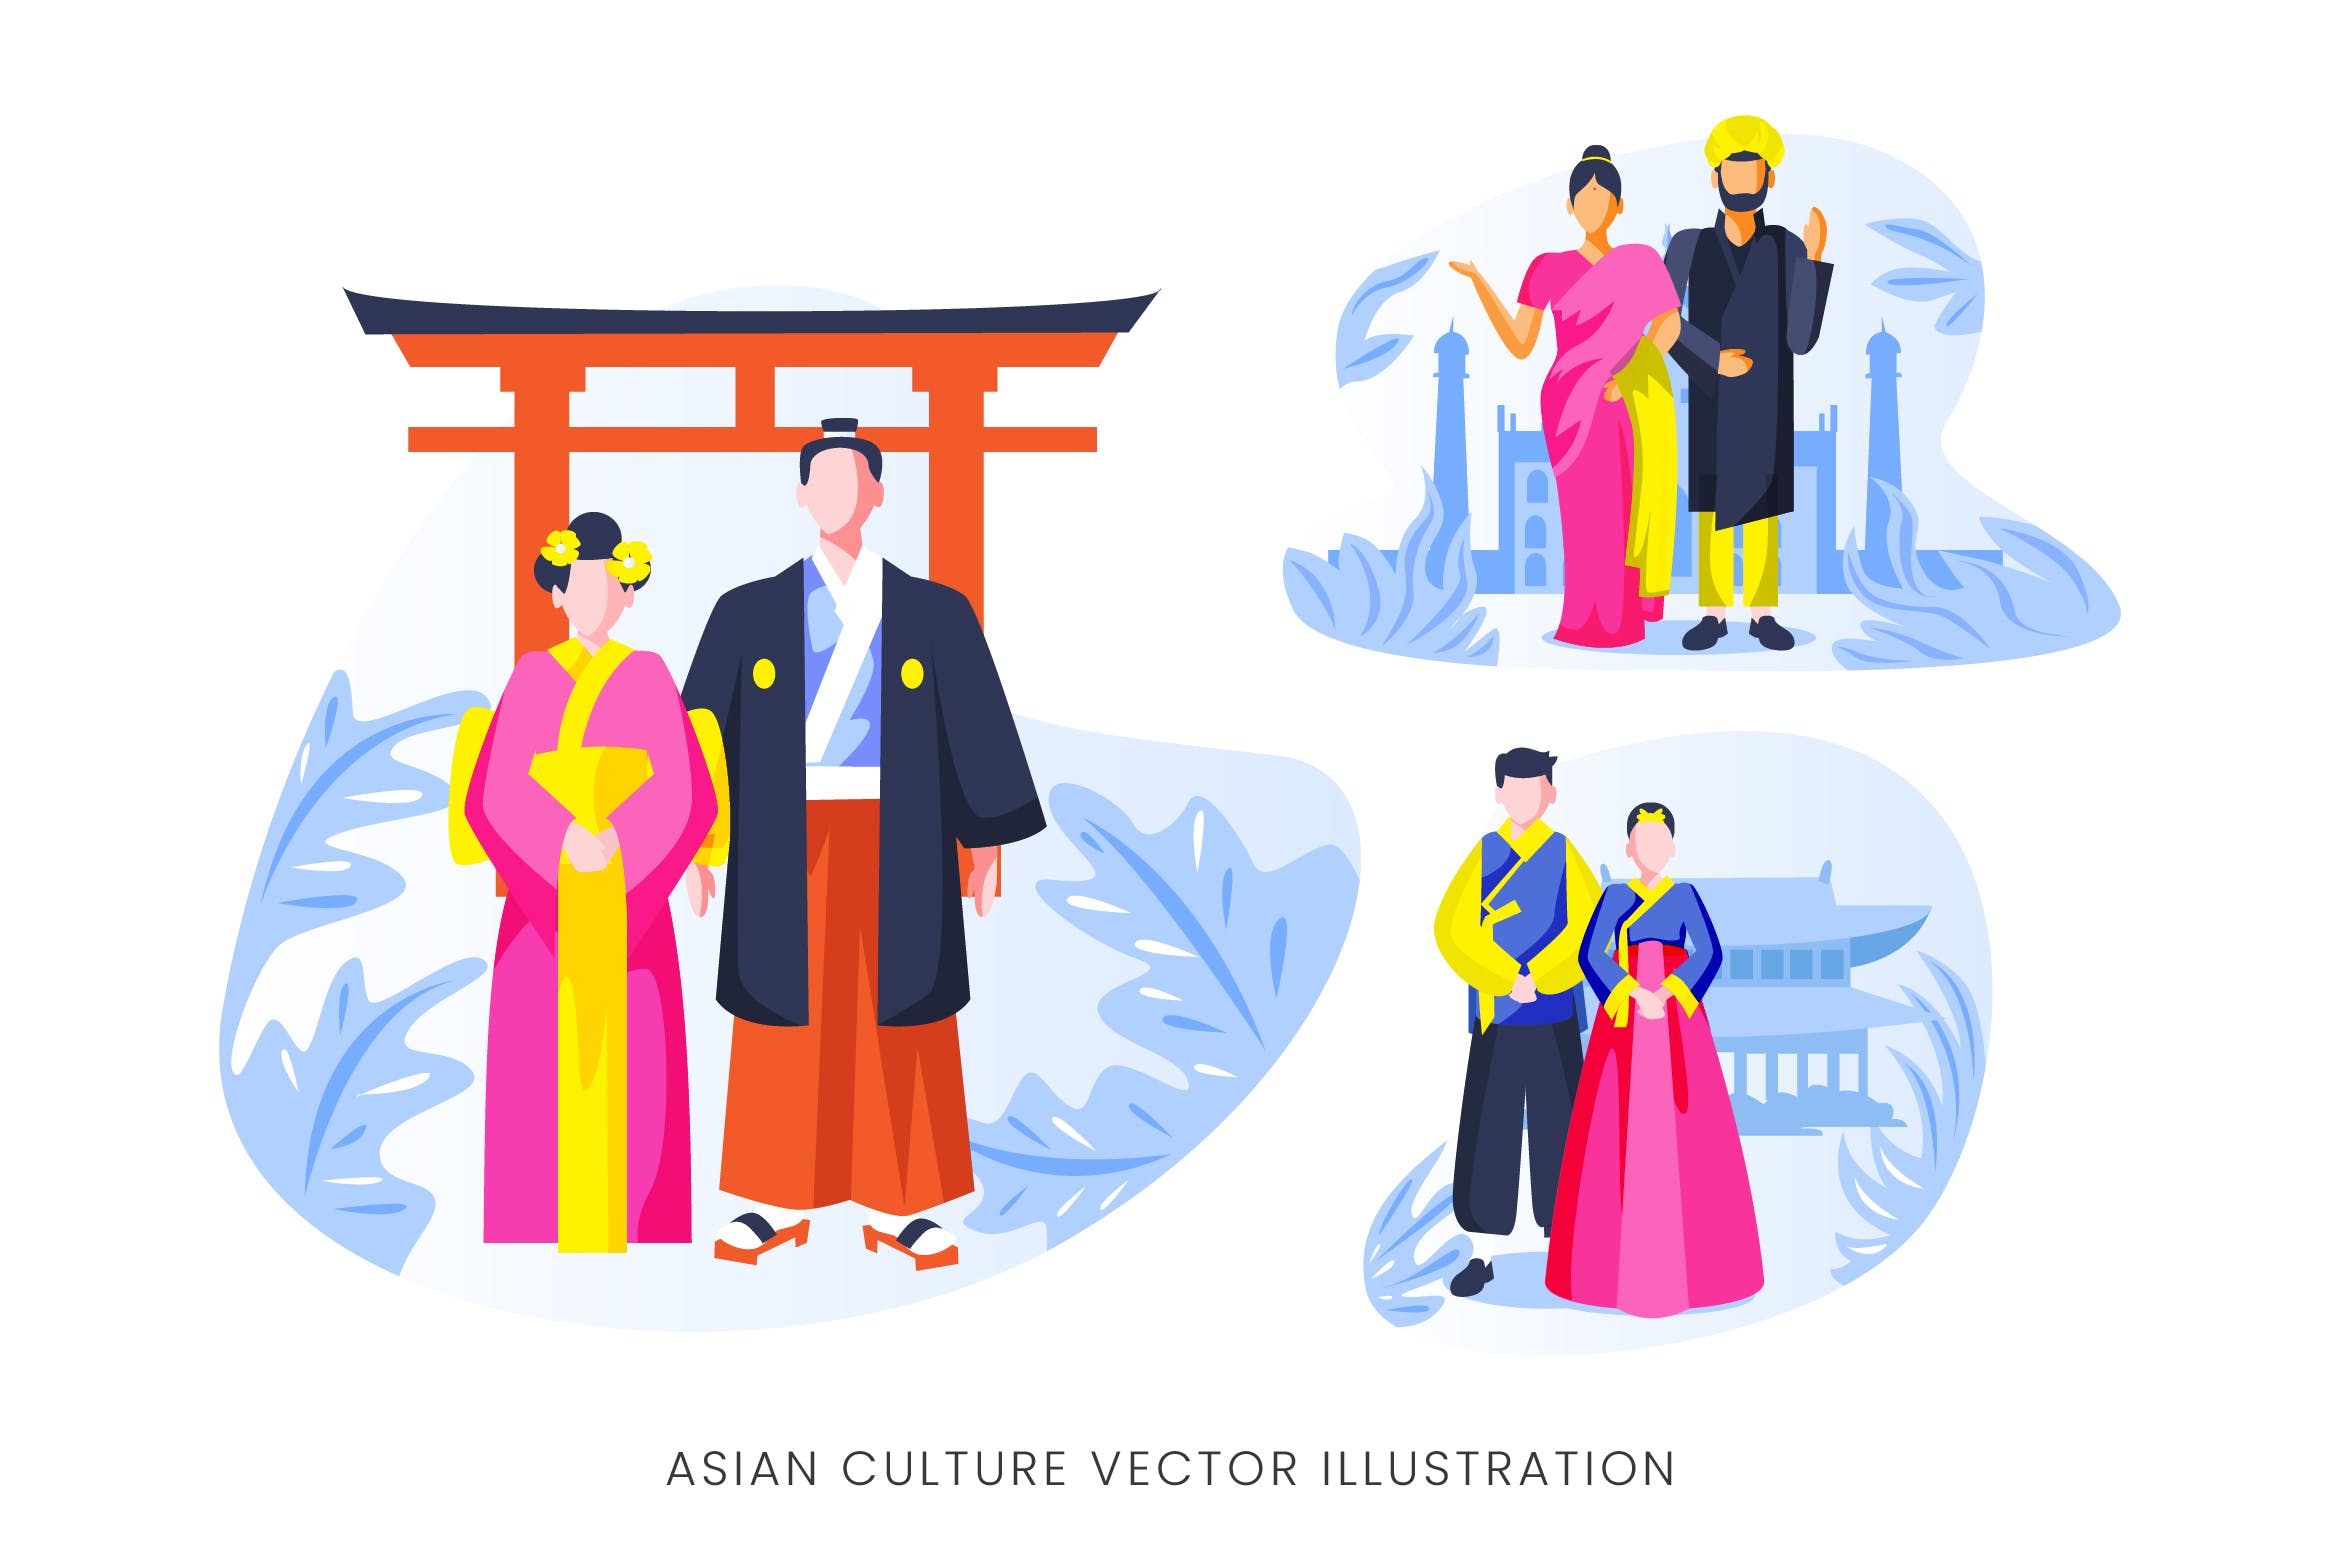 亚洲文化人物形象16图库精选手绘插画矢量素材 Asian Culture Vector Character Set插图